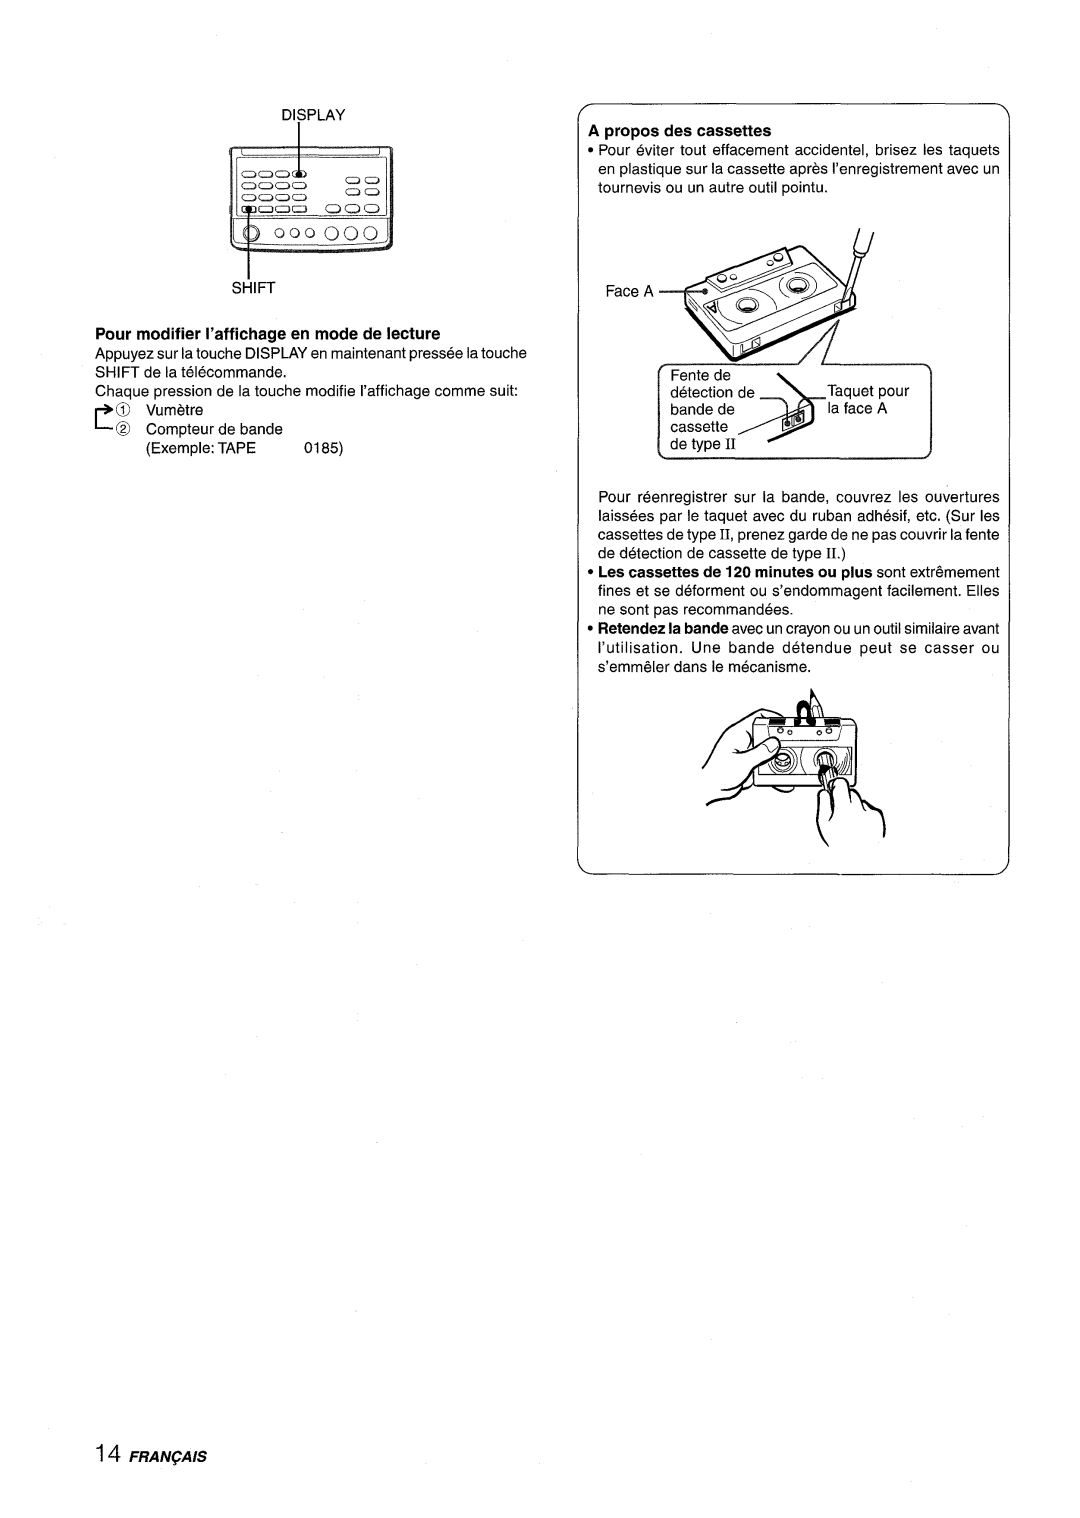 Aiwa XR-M88 manual A propos des cassettes, Fran~Ais, Pour modifier I’affichage en mode de lecture 